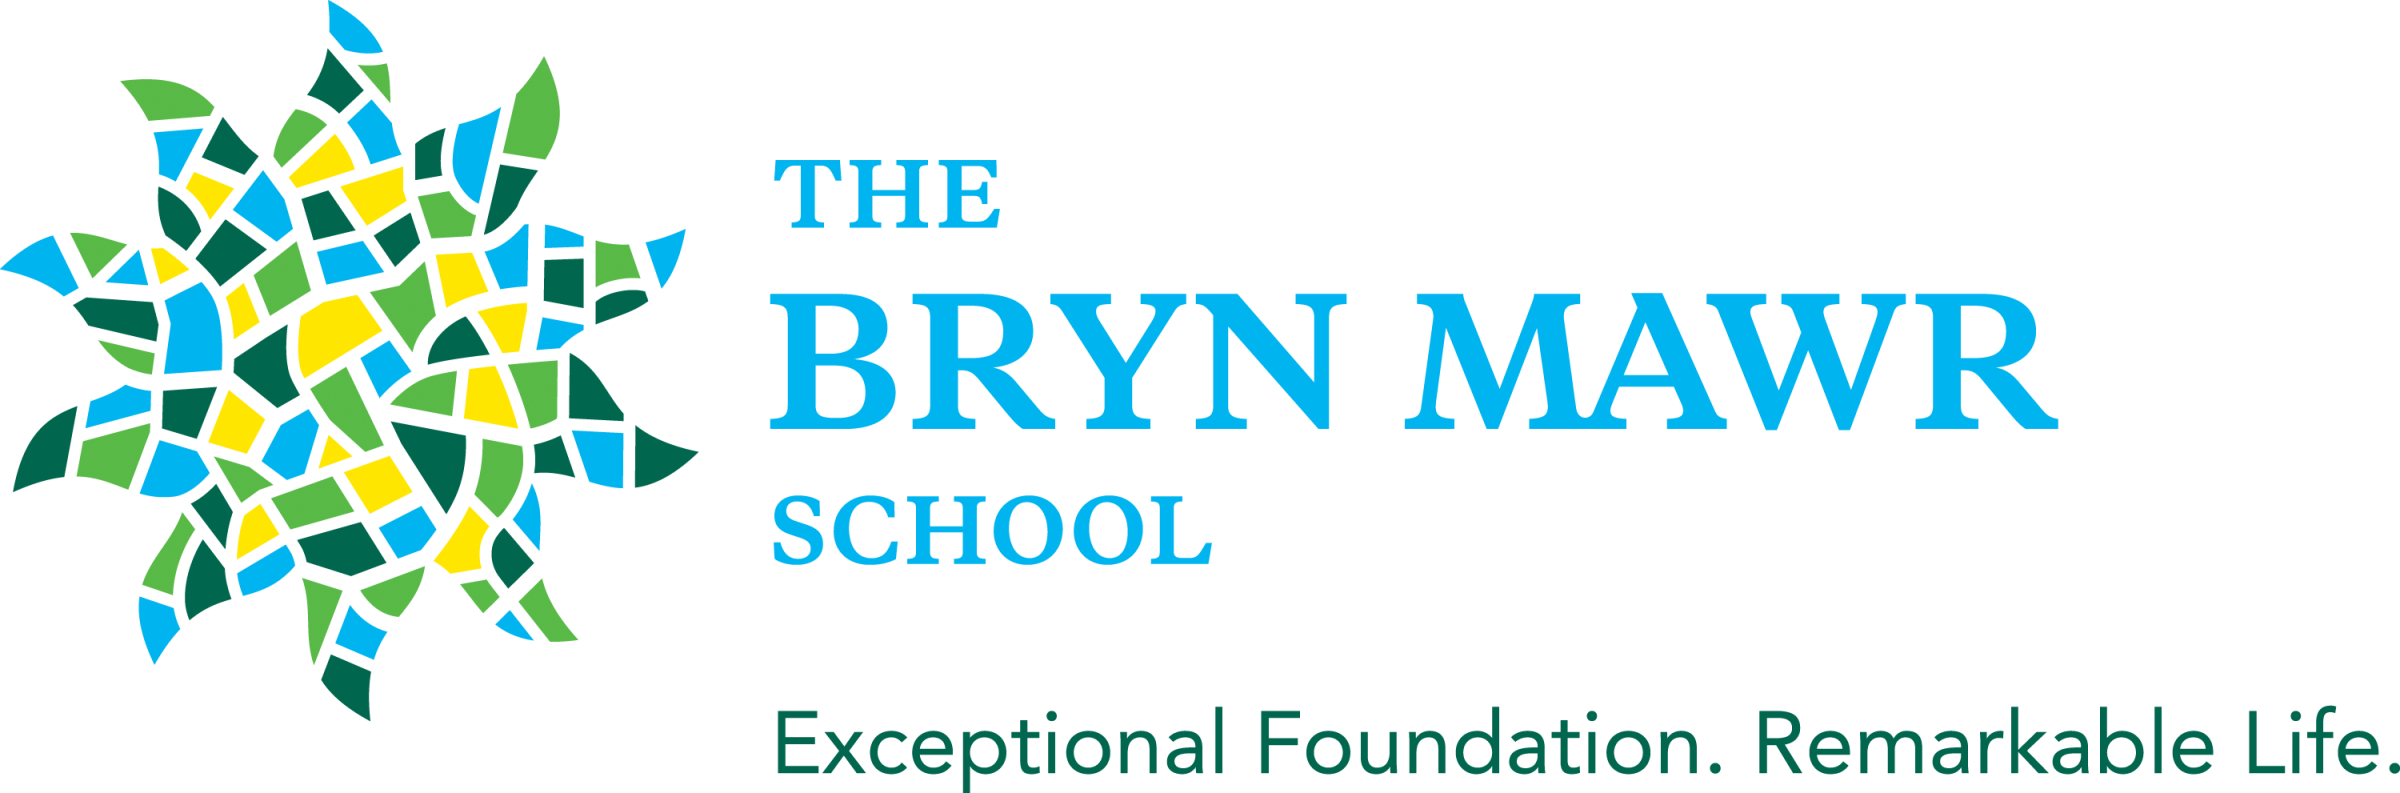 The Bryn Mawr School Company Logo